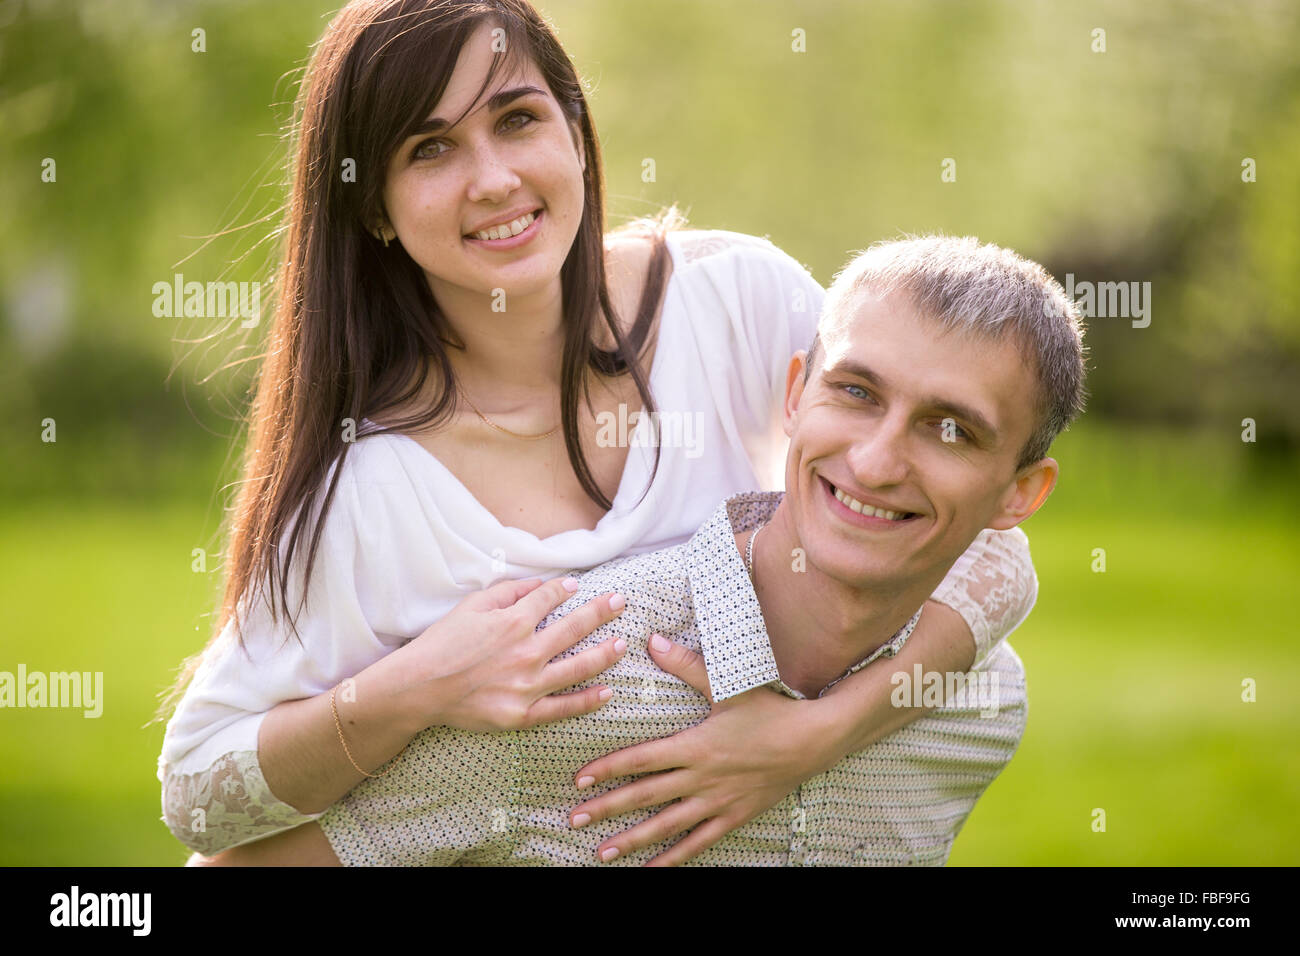 Porträt des glücklichen Paares in der Liebe zu einem Termin, junger Mann, dass seine schöne Freundin piggyback-Fahrt, Lächeln, Spaß Zusam Stockfoto